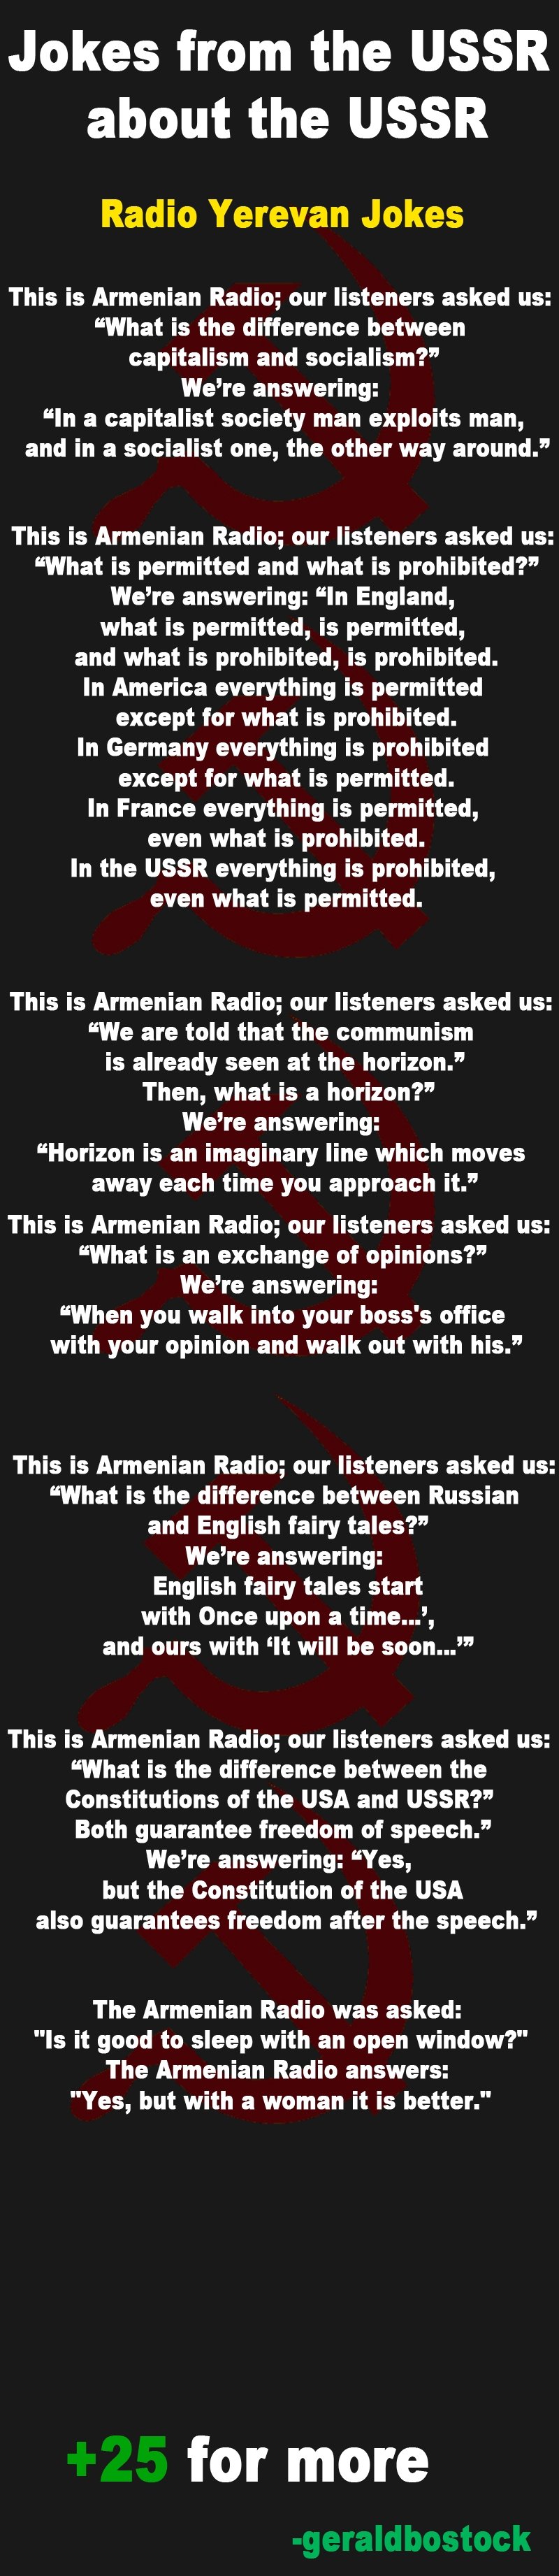 Actual USSR jokes